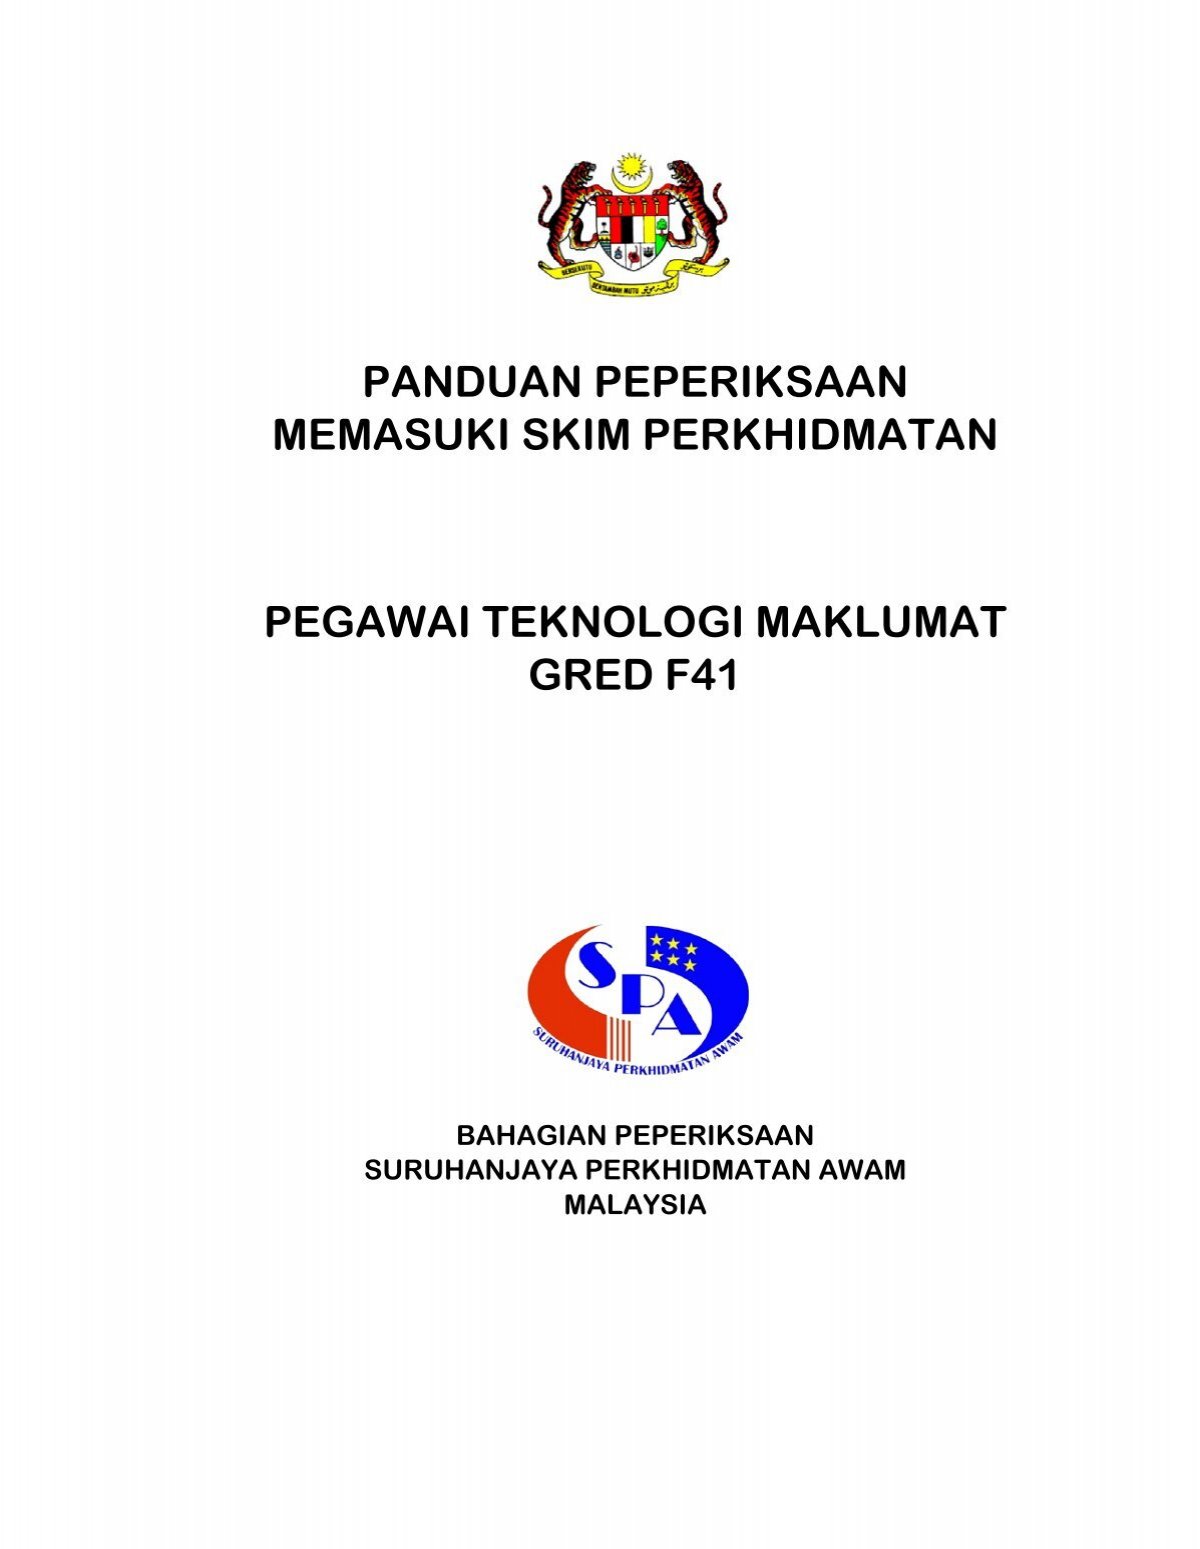 Pegawai Teknologi Maklumat Gred F41 Spa Malaysia